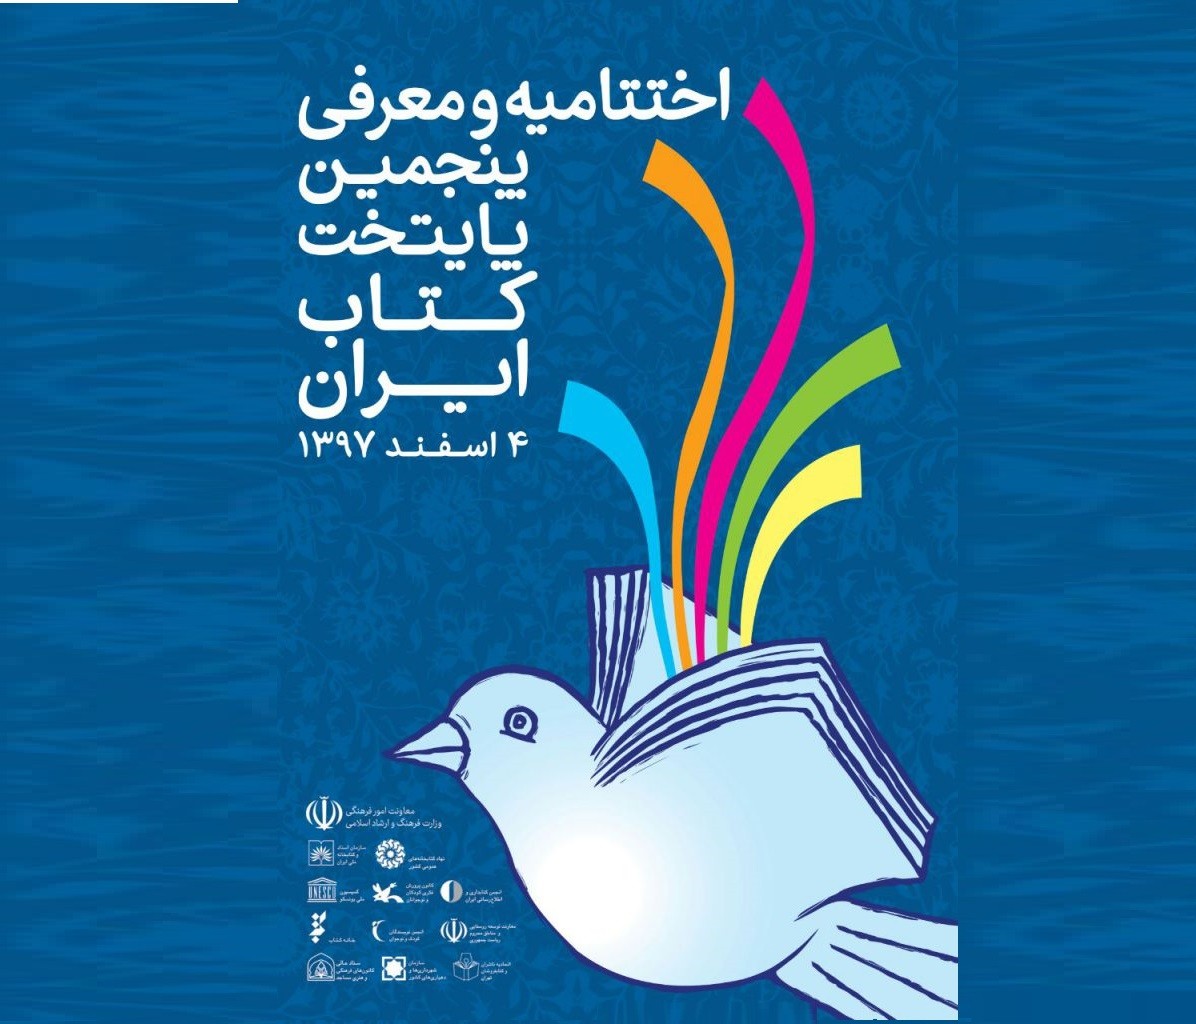 فراخوان طراحی پوستر ششمین دوره انتخاب و معرفی پایتخت کتاب ایران